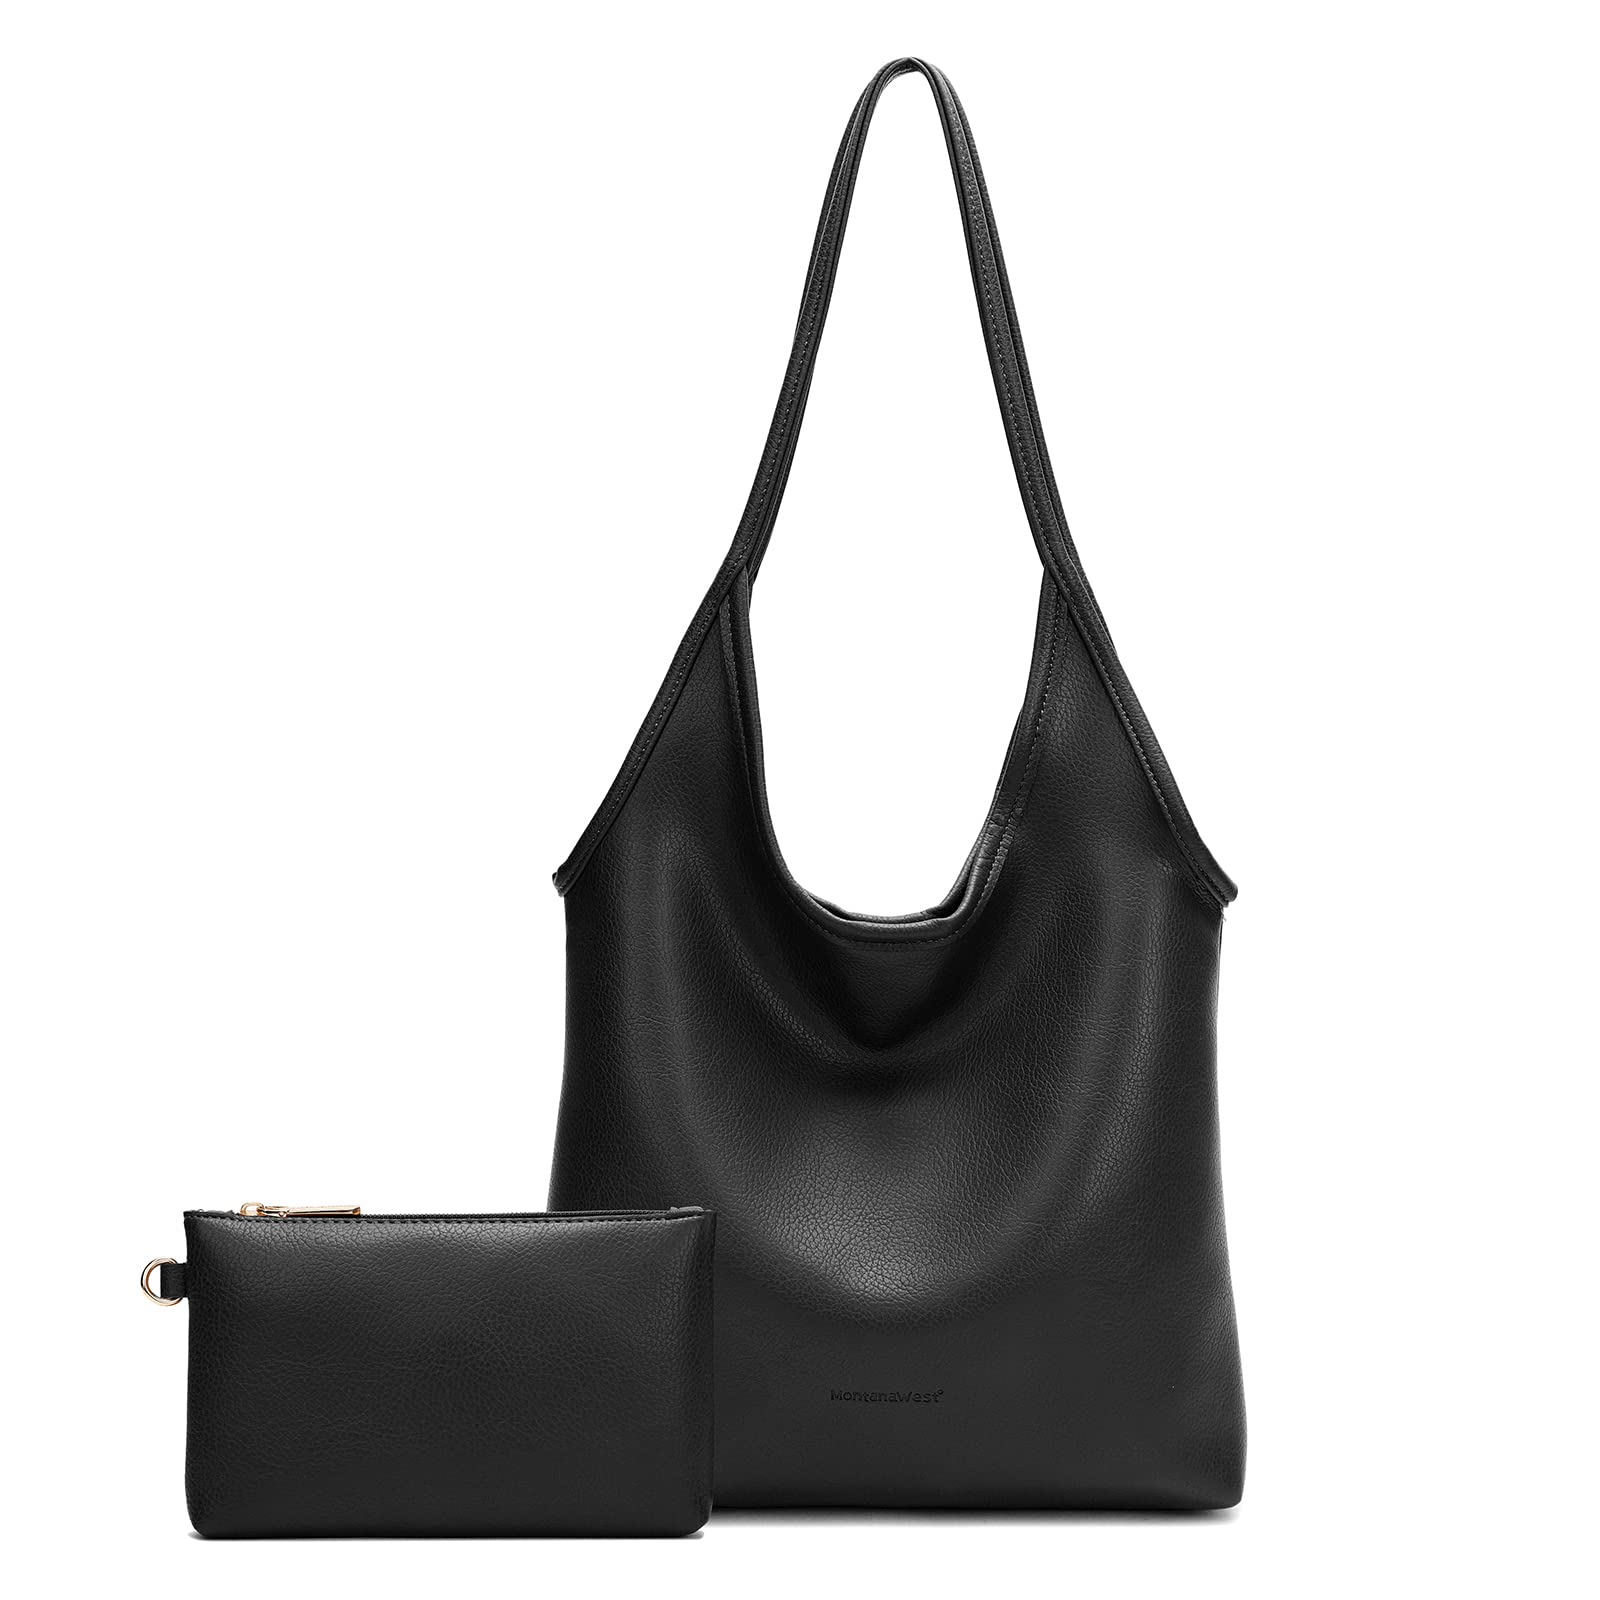 LEATHER HOBO Bag BLACK Oversize Shoulder Bag Everyday Leather Purse Soft Leather  Handbag for Women - Etsy | Soft leather handbags, Leather hobo, Leather  handbags